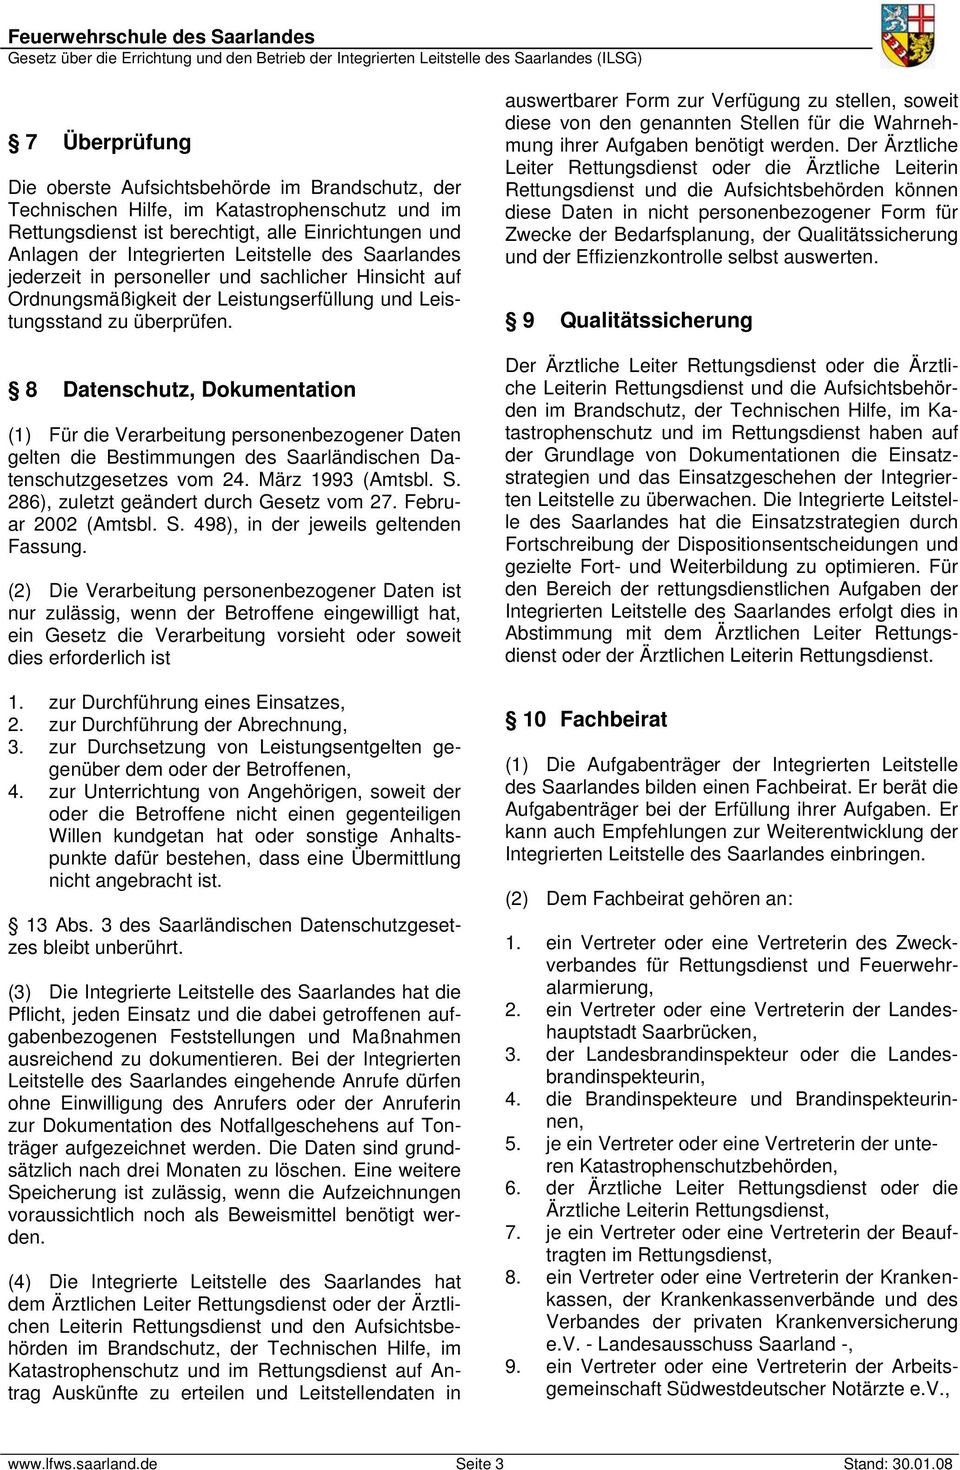 8 Datenschutz, Dokumentation (1) Für die Verarbeitung personenbezogener Daten gelten die Bestimmungen des Saarländischen Datenschutzgesetzes vom 24. März 1993 (Amtsbl. S. 286), zuletzt geändert durch Gesetz vom 27.